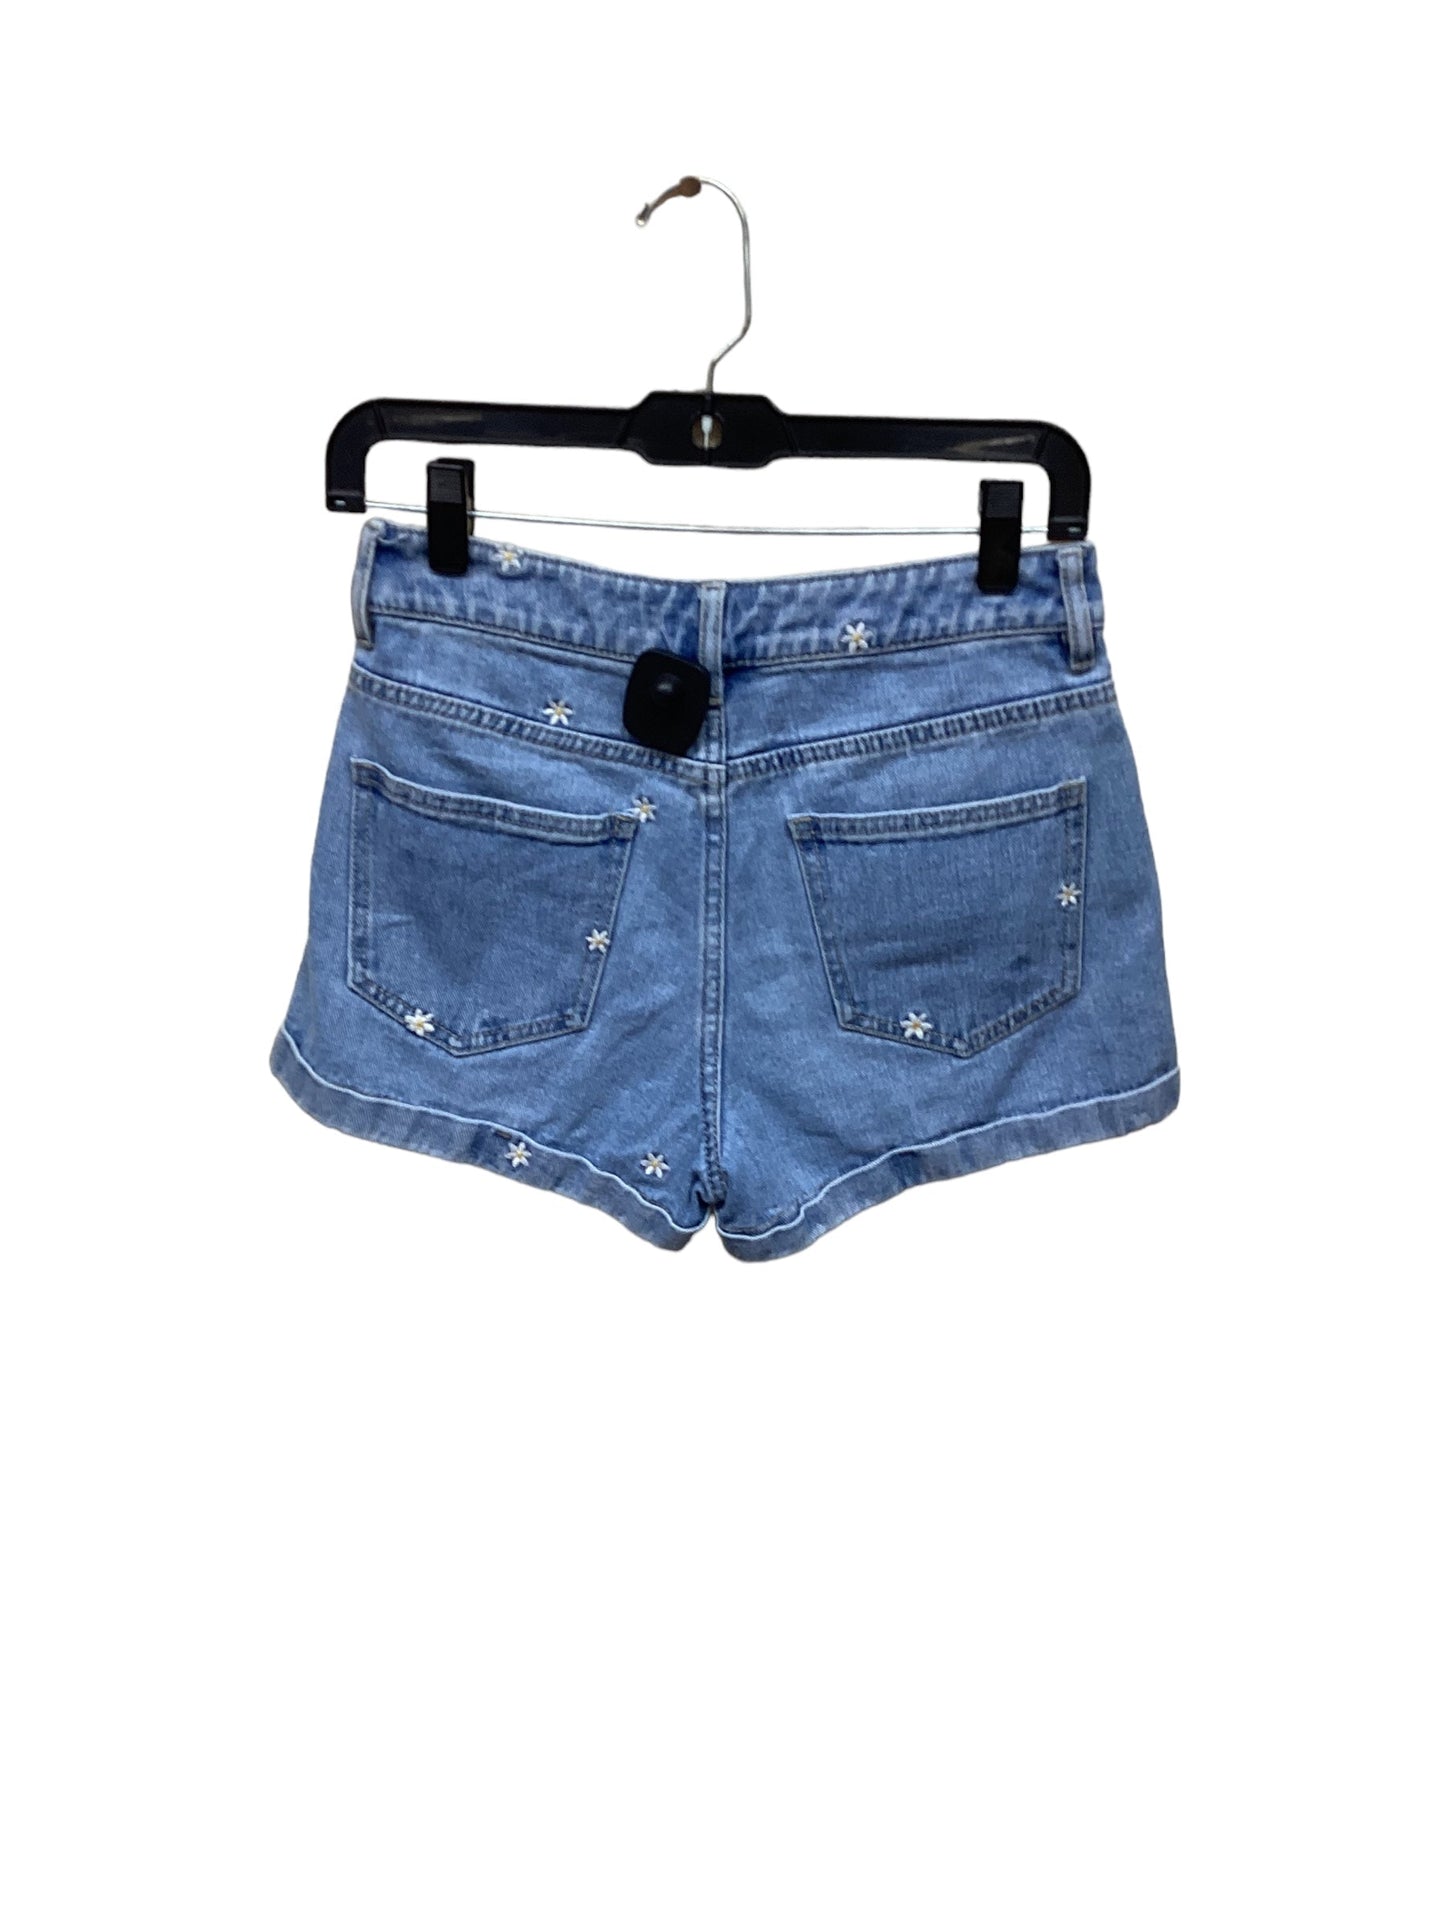 Blue Denim Shorts Pacsun, Size 0